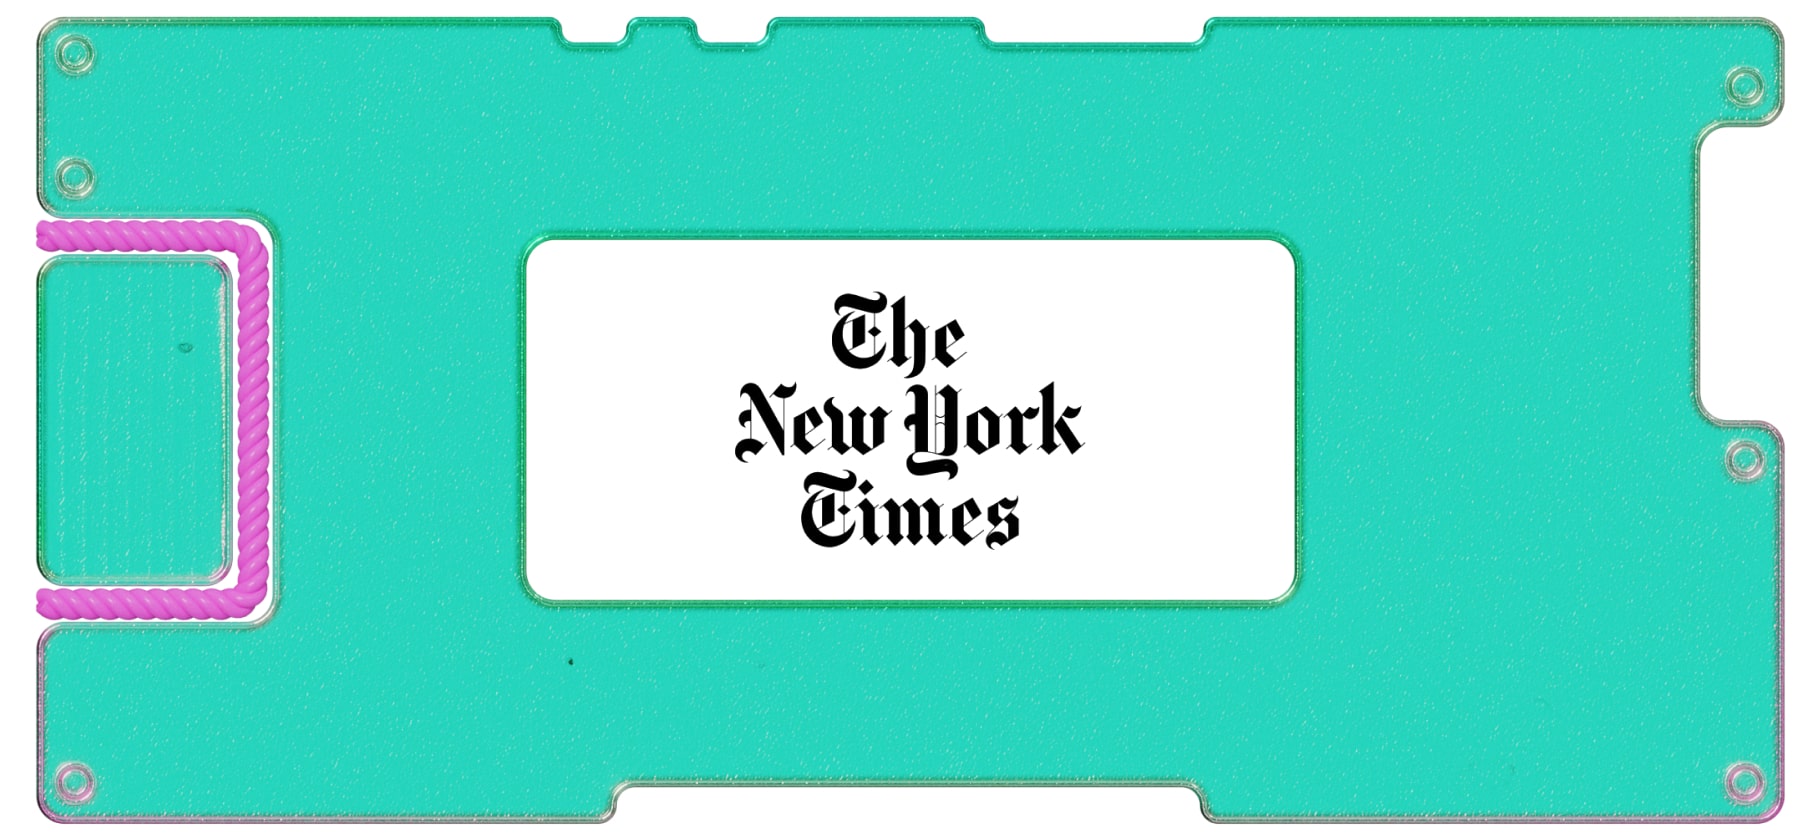 Инвестидея: New York Times, потому что Америка в упадке